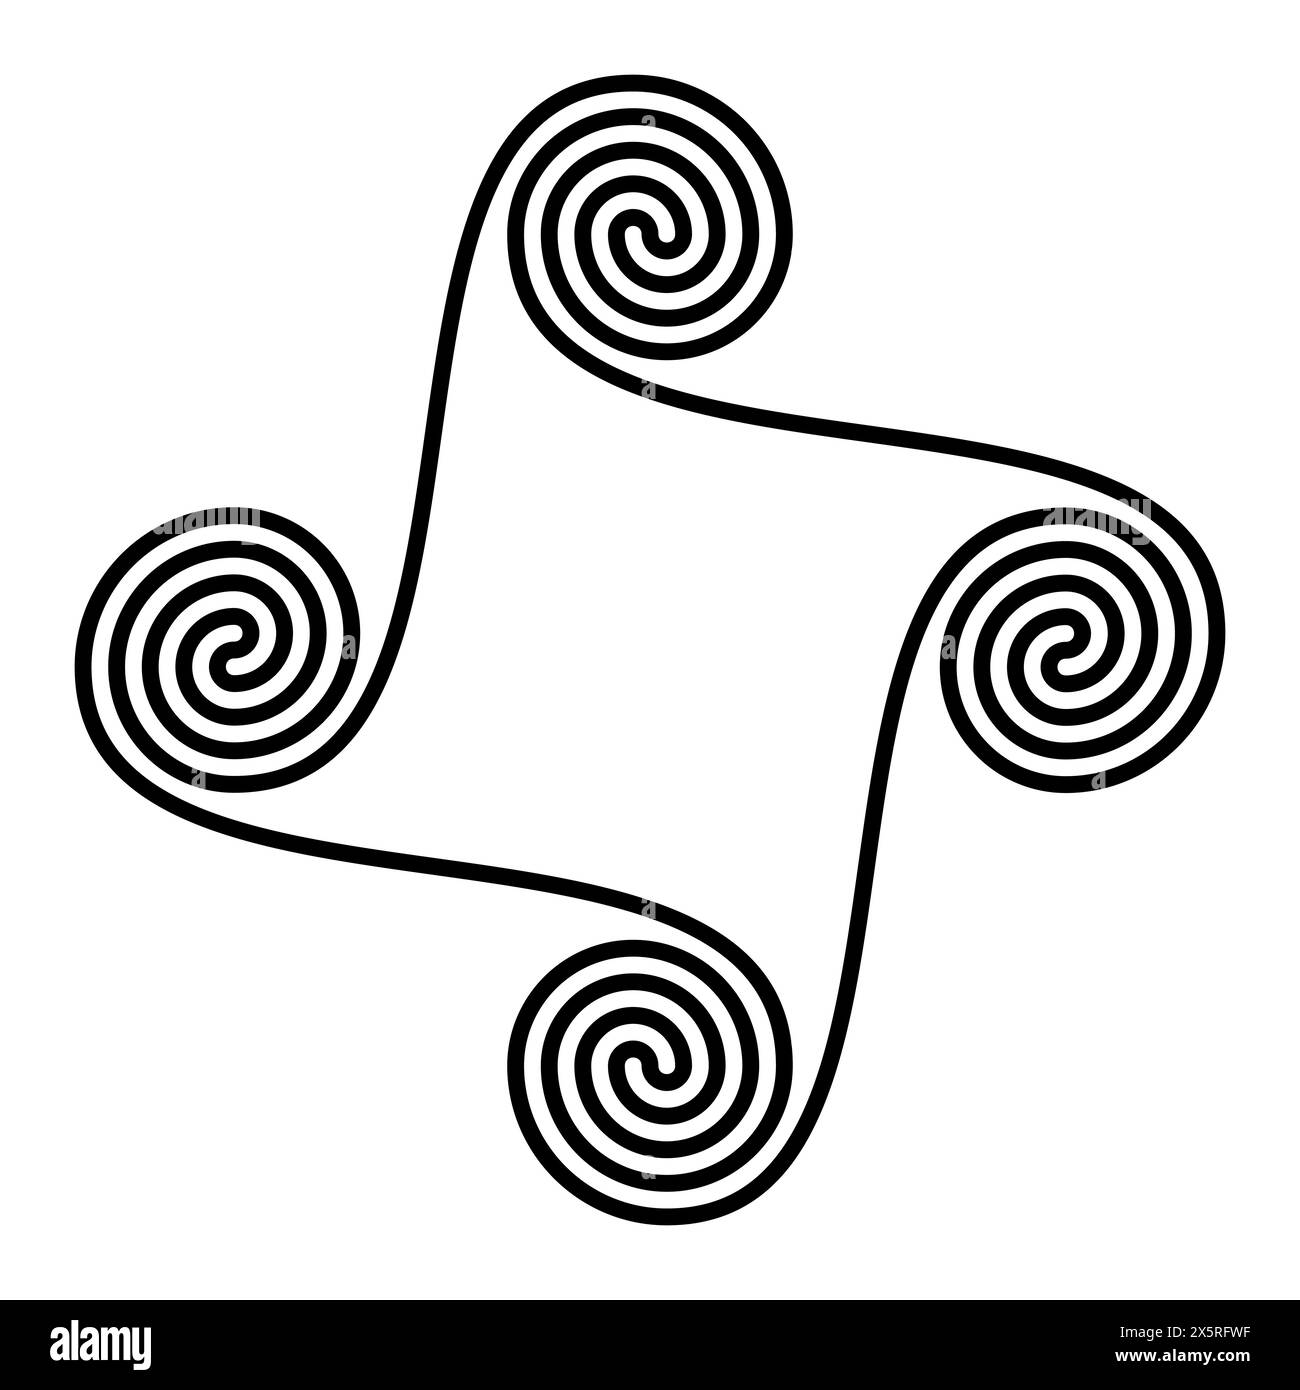 Spiraltetraskelion und Vierfachspirale. Geometrisches Muster und Symbol von vier miteinander verbundenen, zweiarmigen archimedischen Spiralen, die nahtlos miteinander verbunden sind. Stockfoto